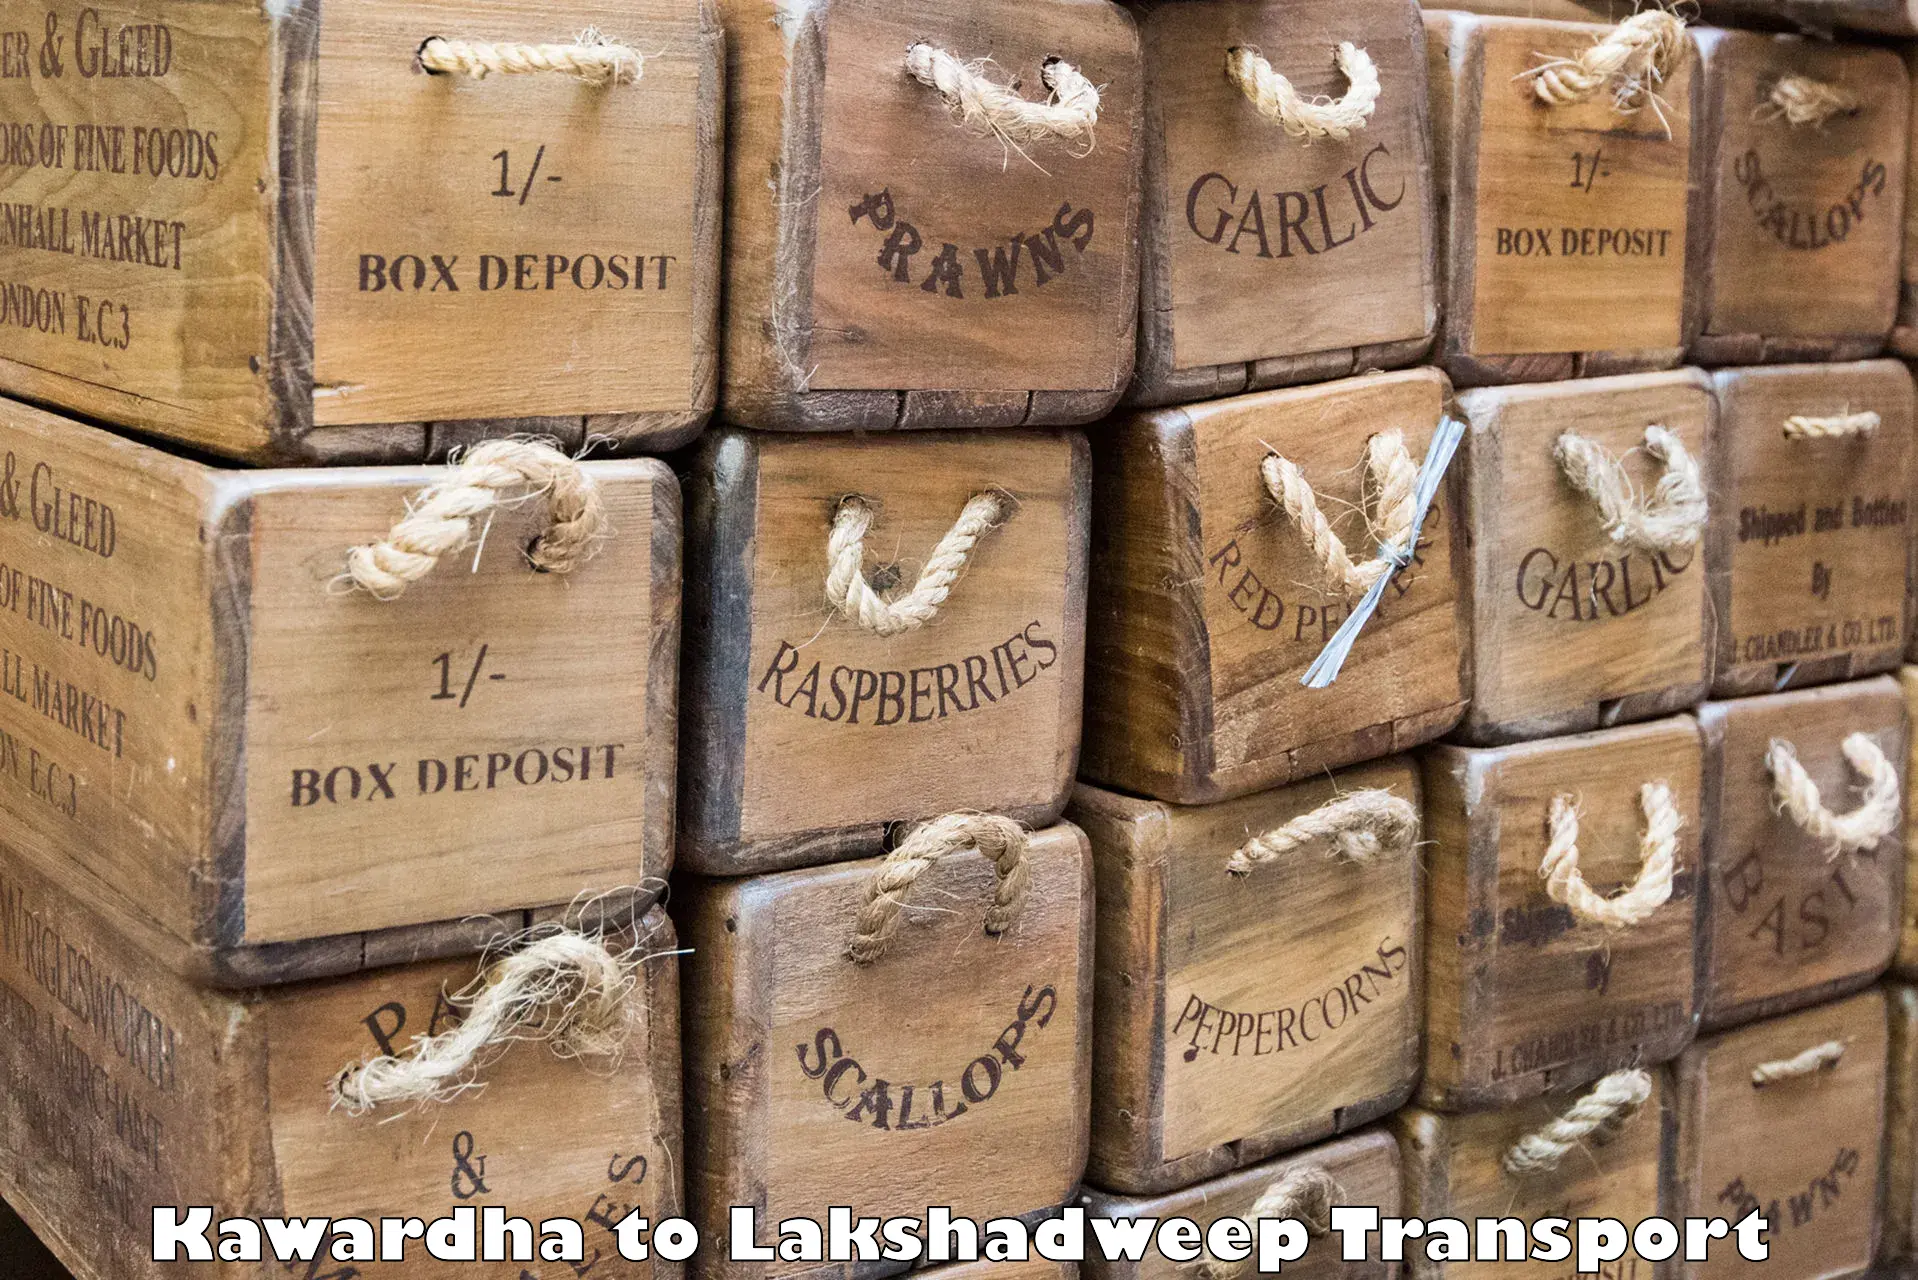 Transport shared services Kawardha to Lakshadweep